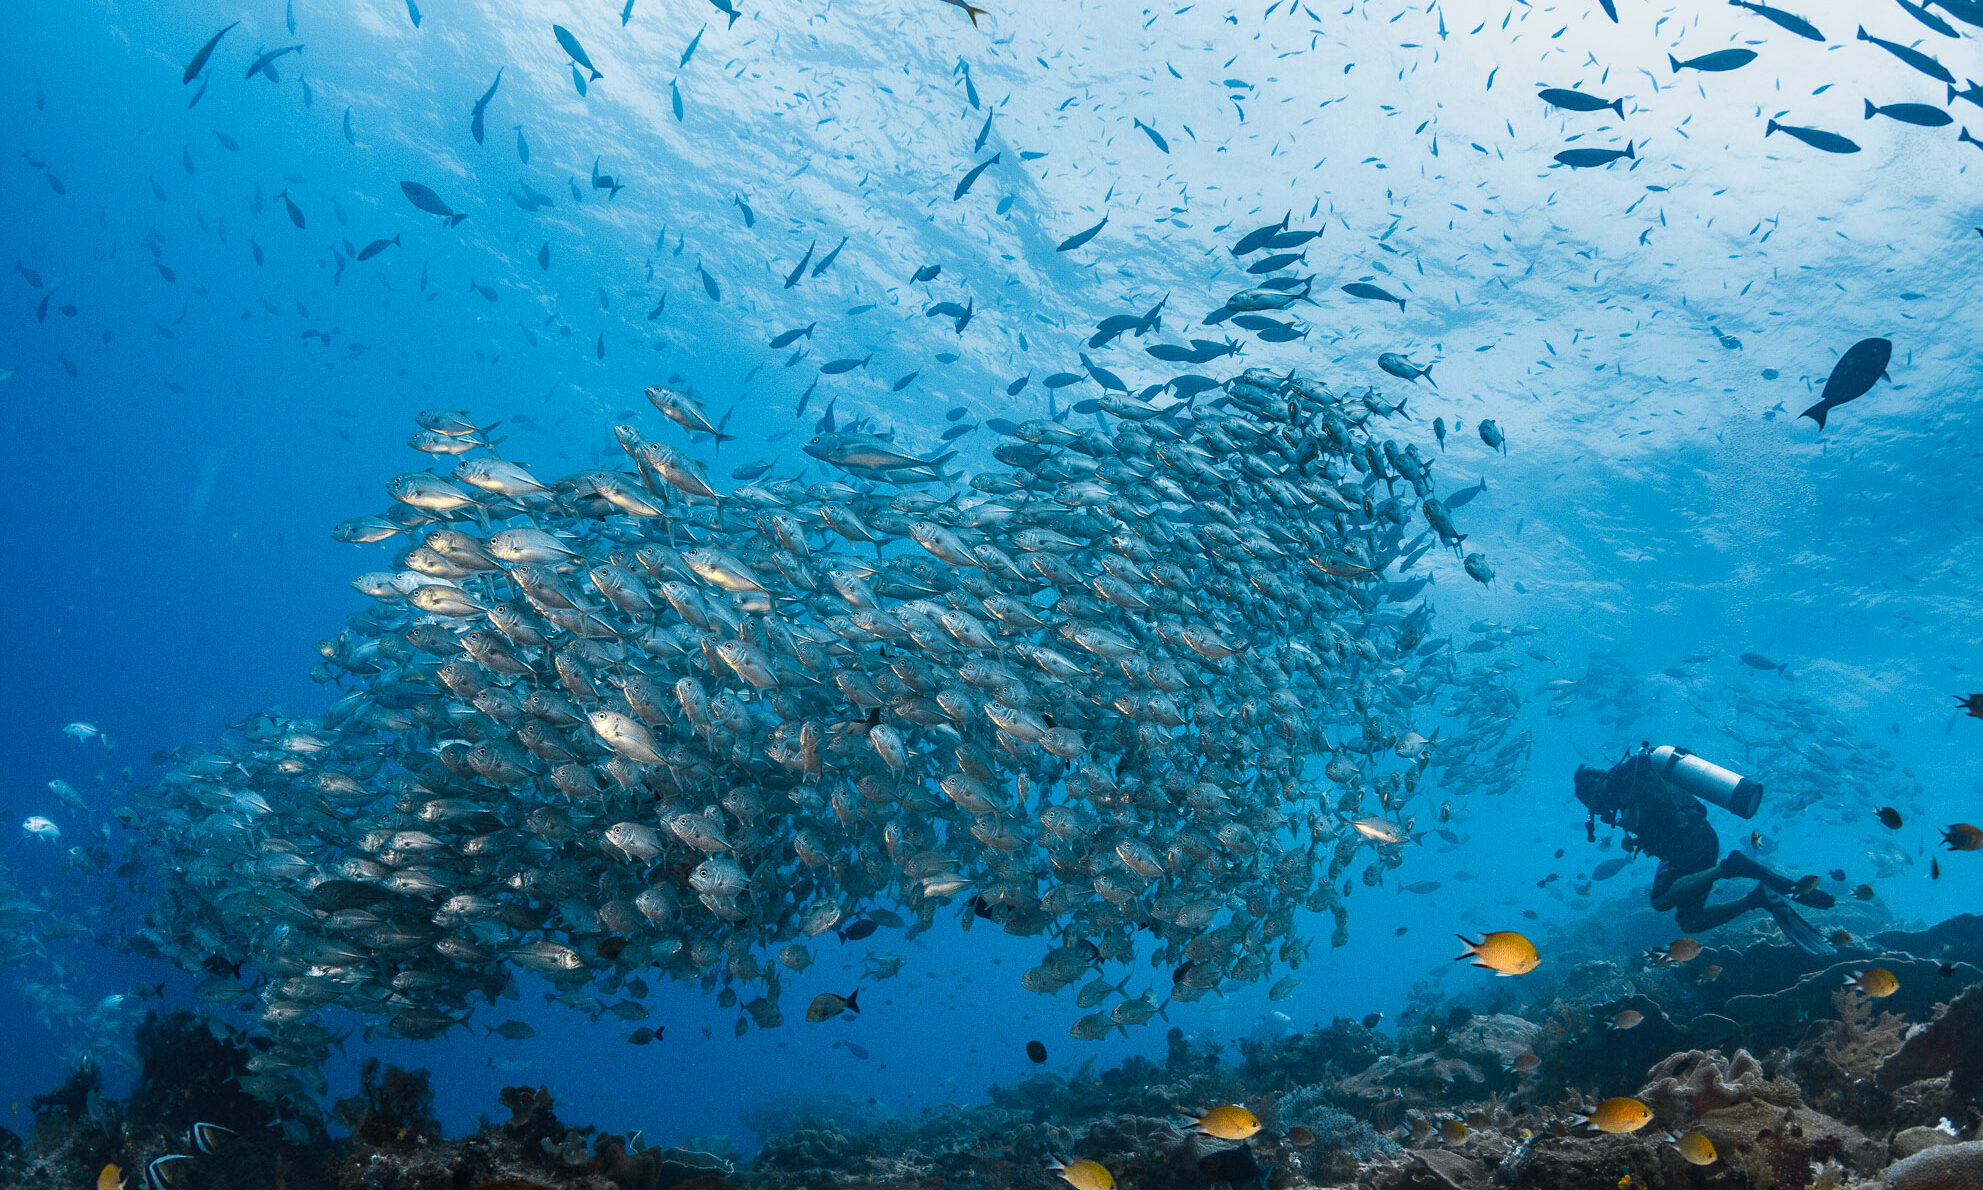 school of fish with diver underwater in blue ocean